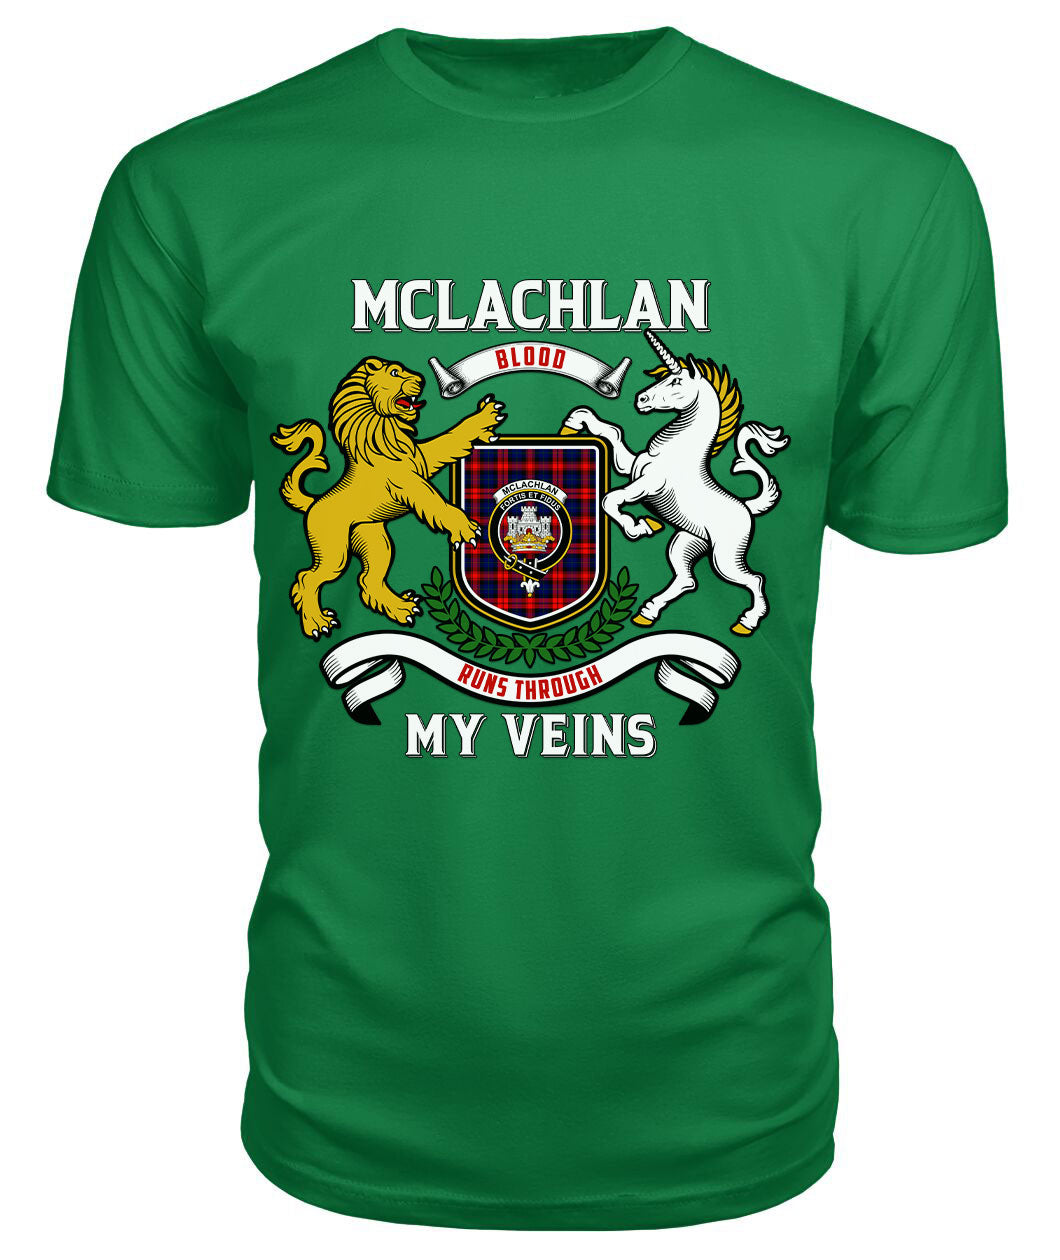 McLachlan Modern Tartan Crest 2D T-shirt - Blood Runs Through My Veins Style